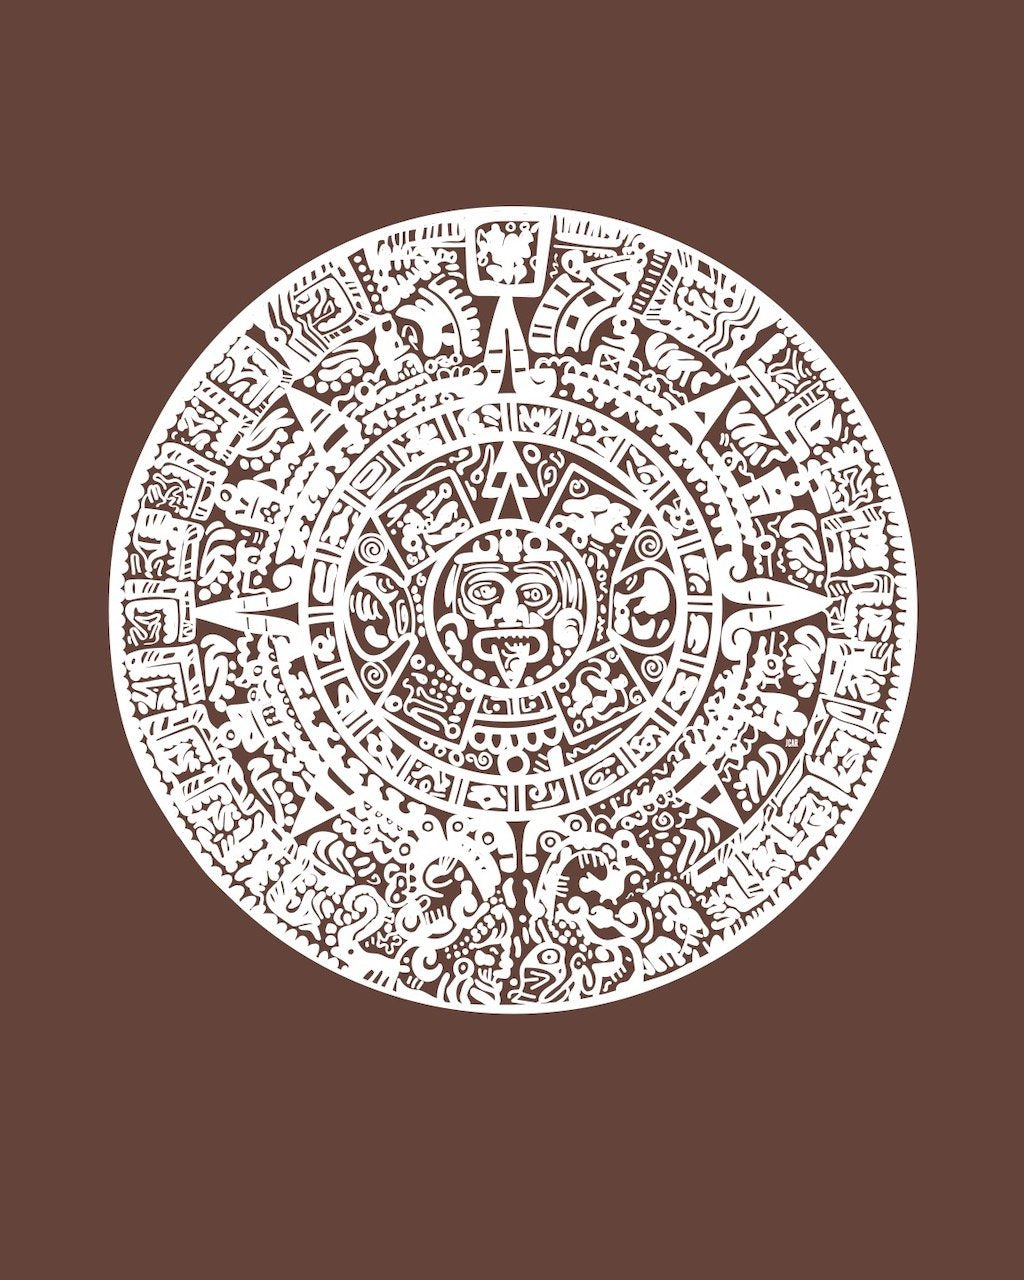 "Aztec Sun" Art Print by Jacqueline Malcolm